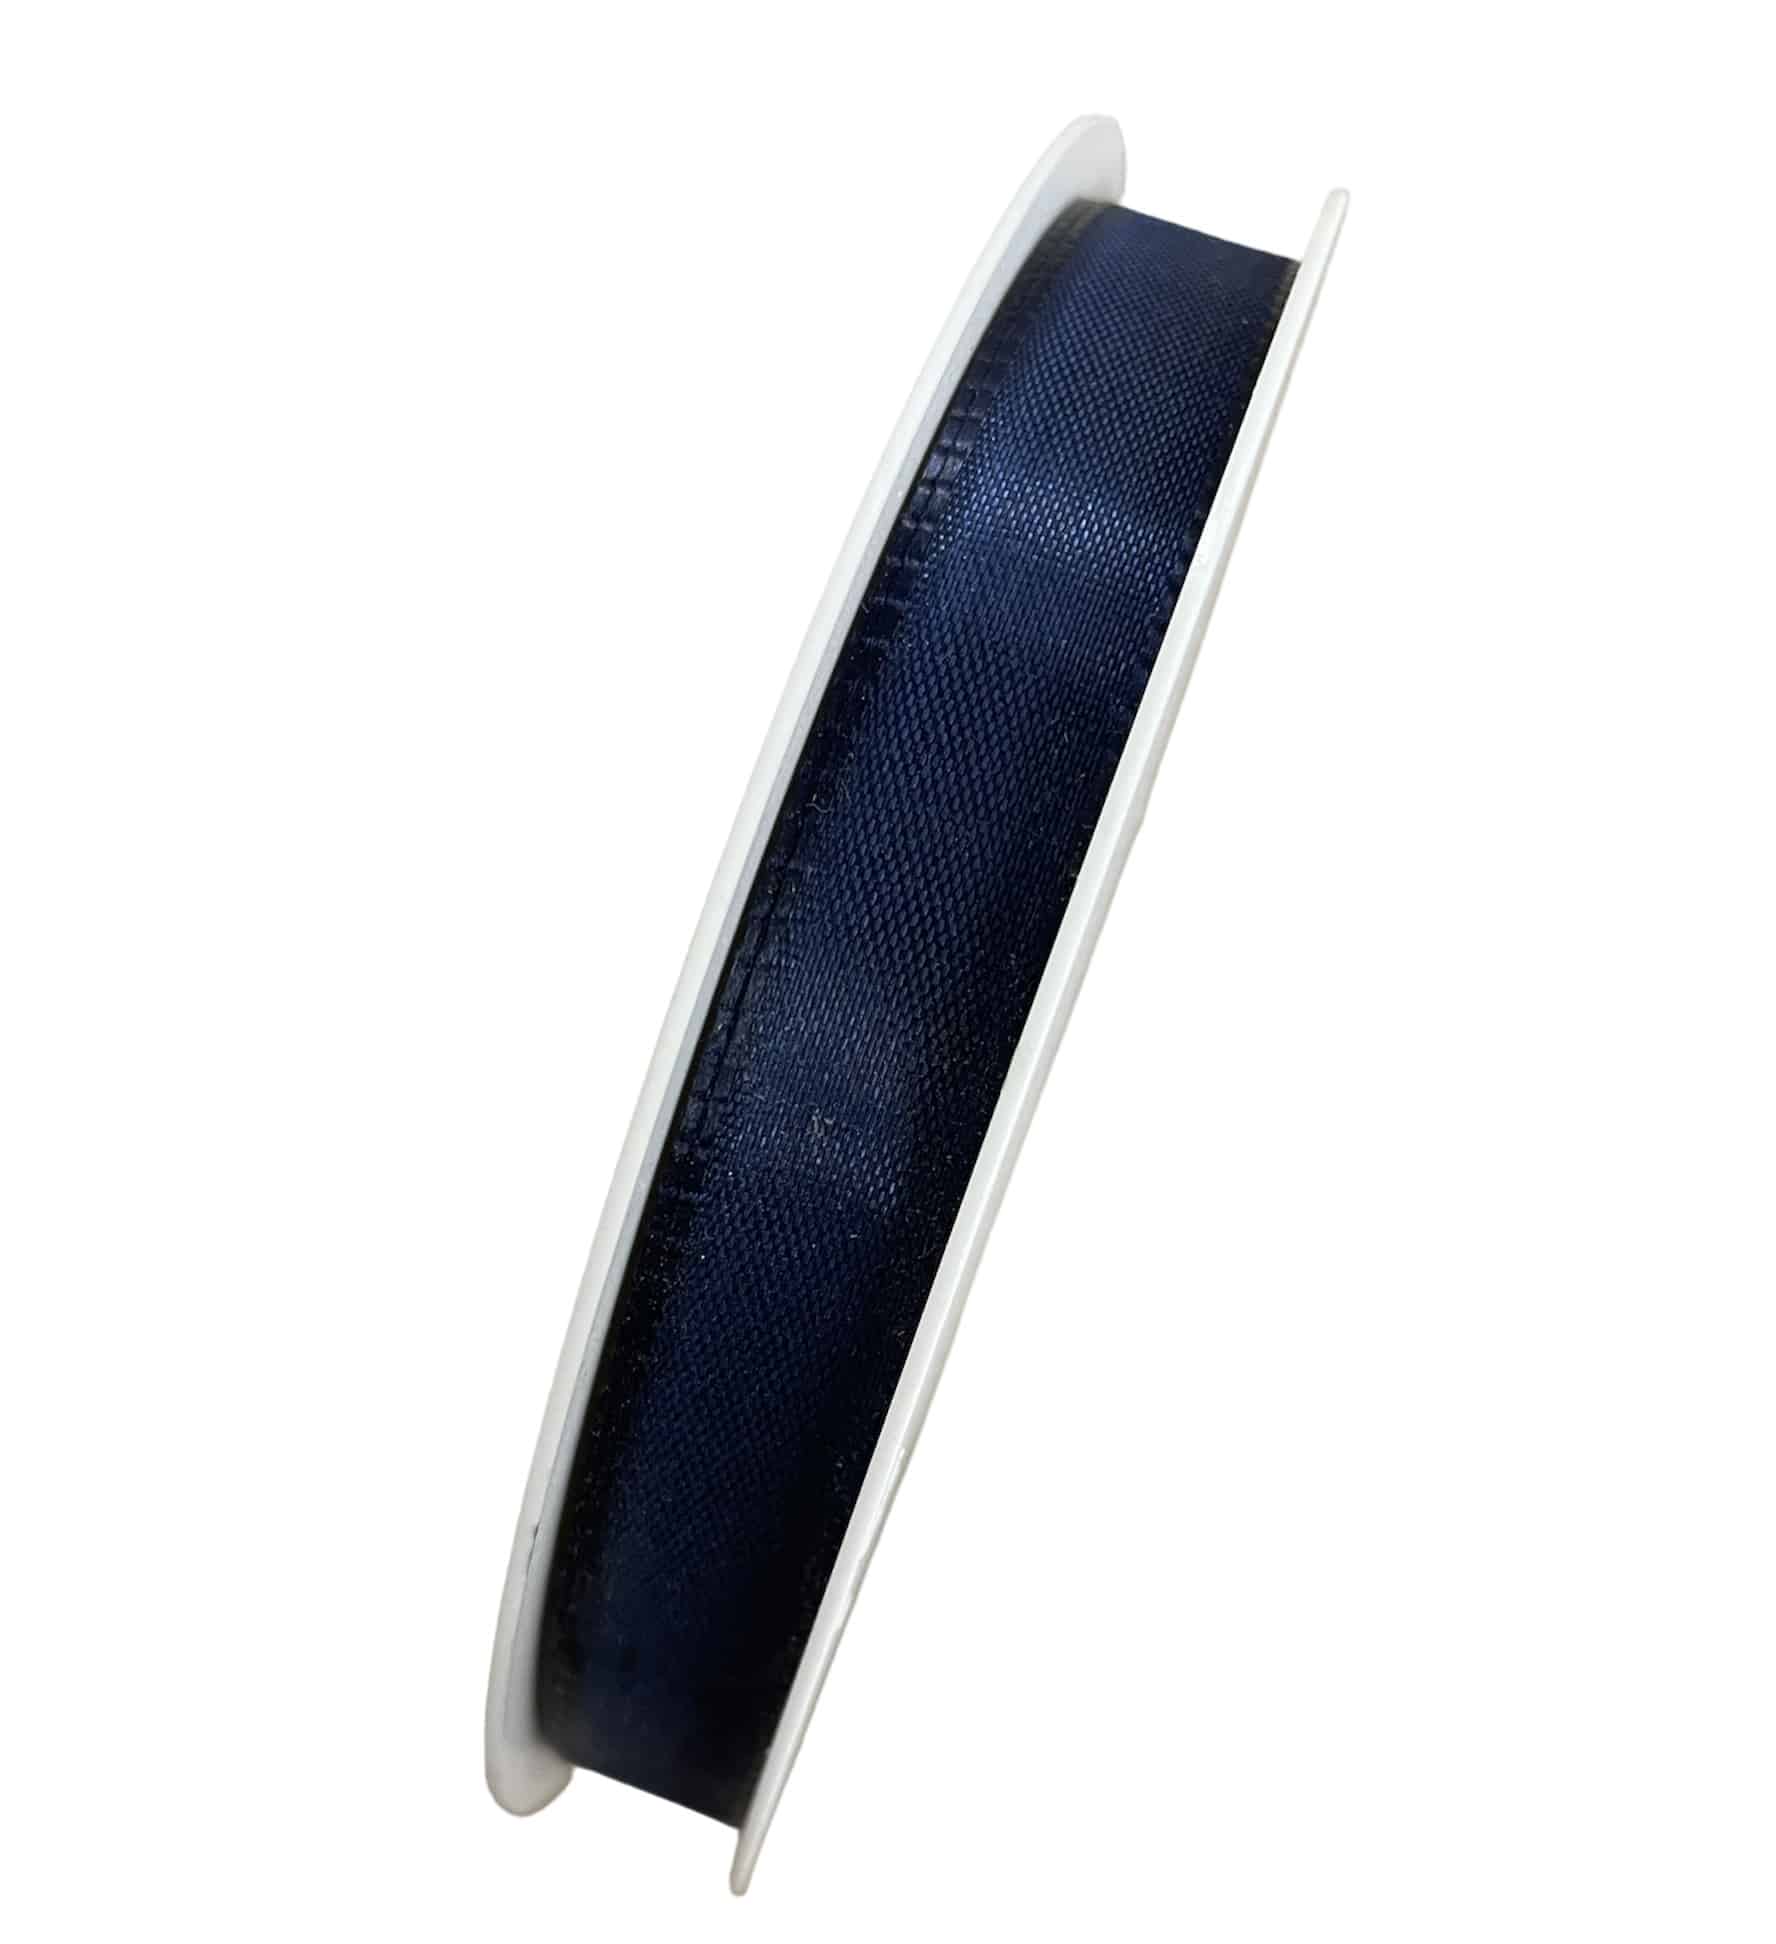 Taftband Stofband Donkerblauw 15mm